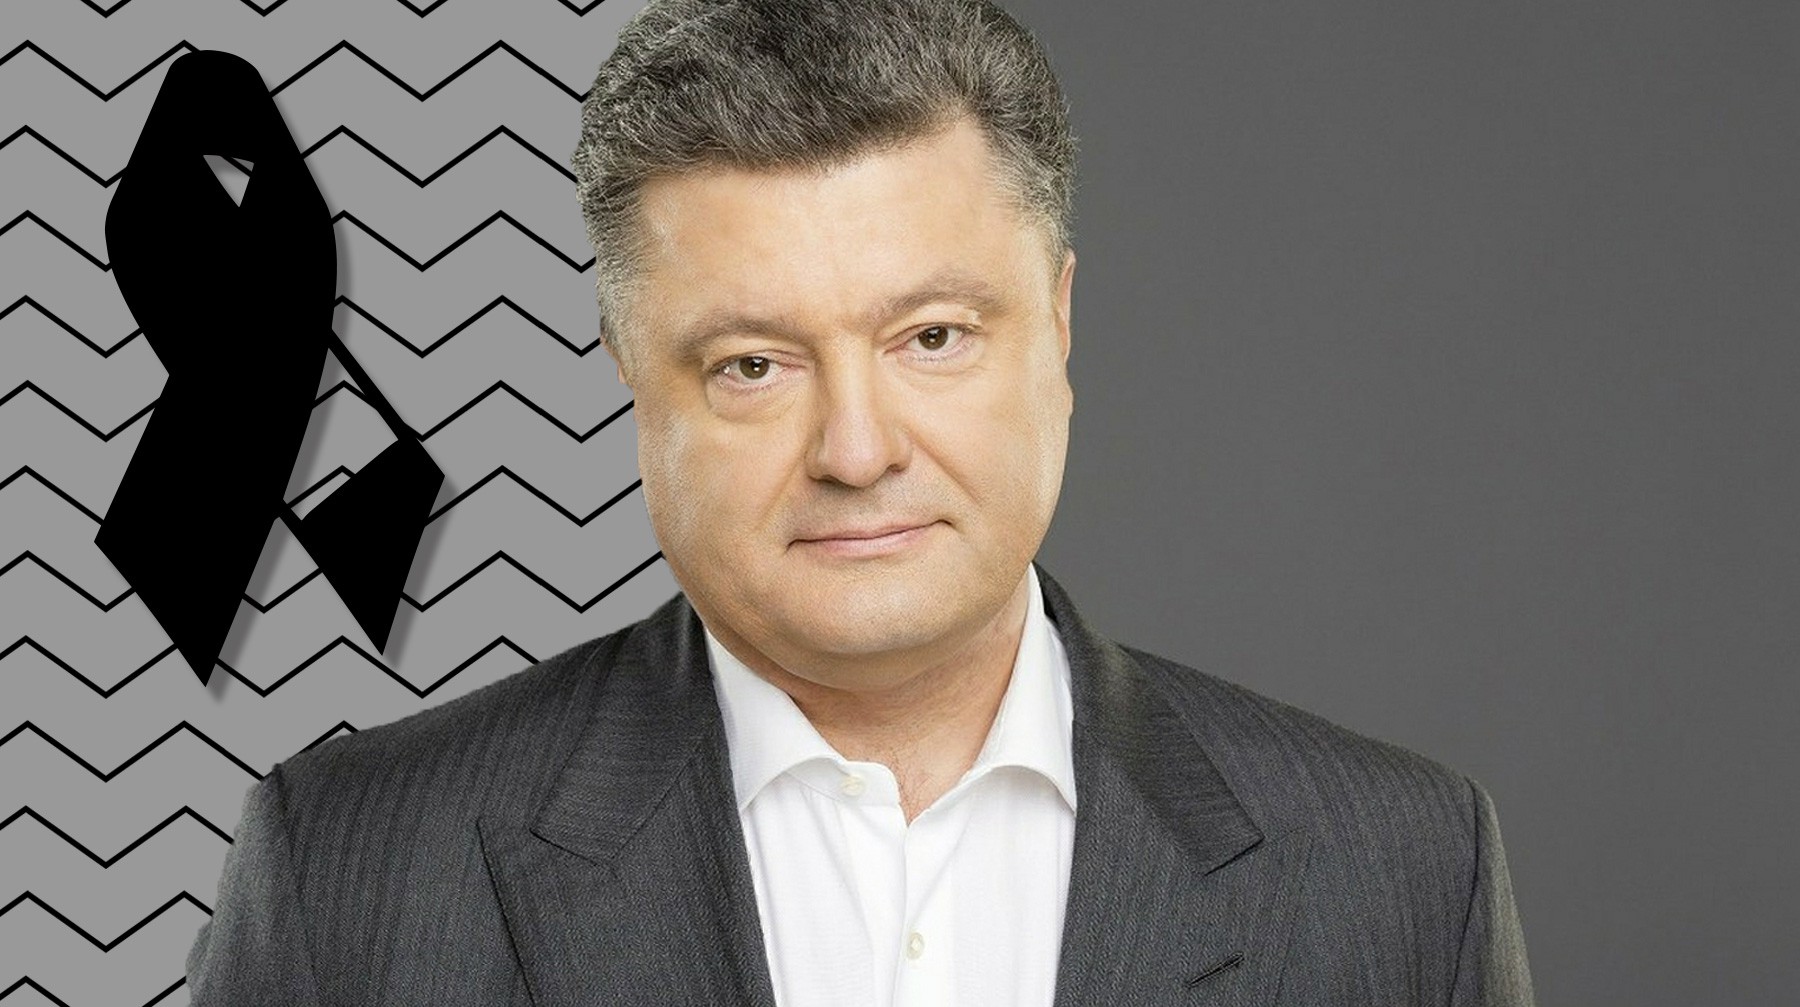 Dailystorm - «Яндекс» «похоронил» президента Украины